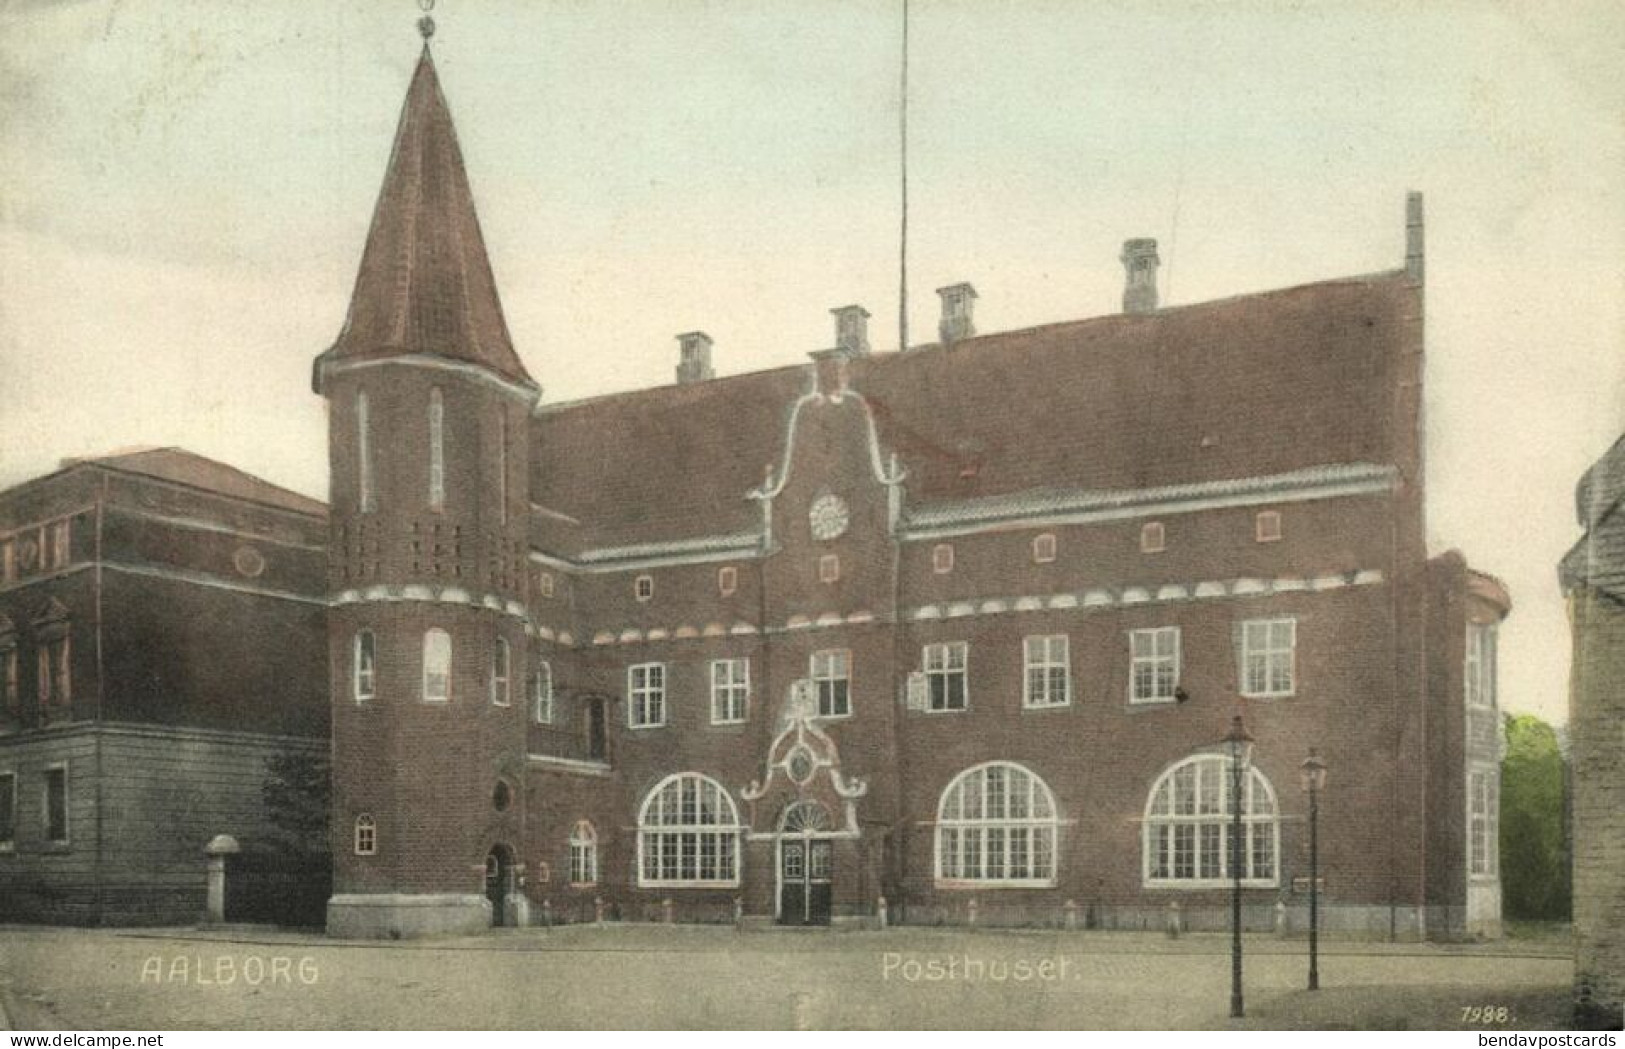 Denmark, AALBORG ÅLBORG, Posthuset, Post Office (1912) Postcard - Denemarken